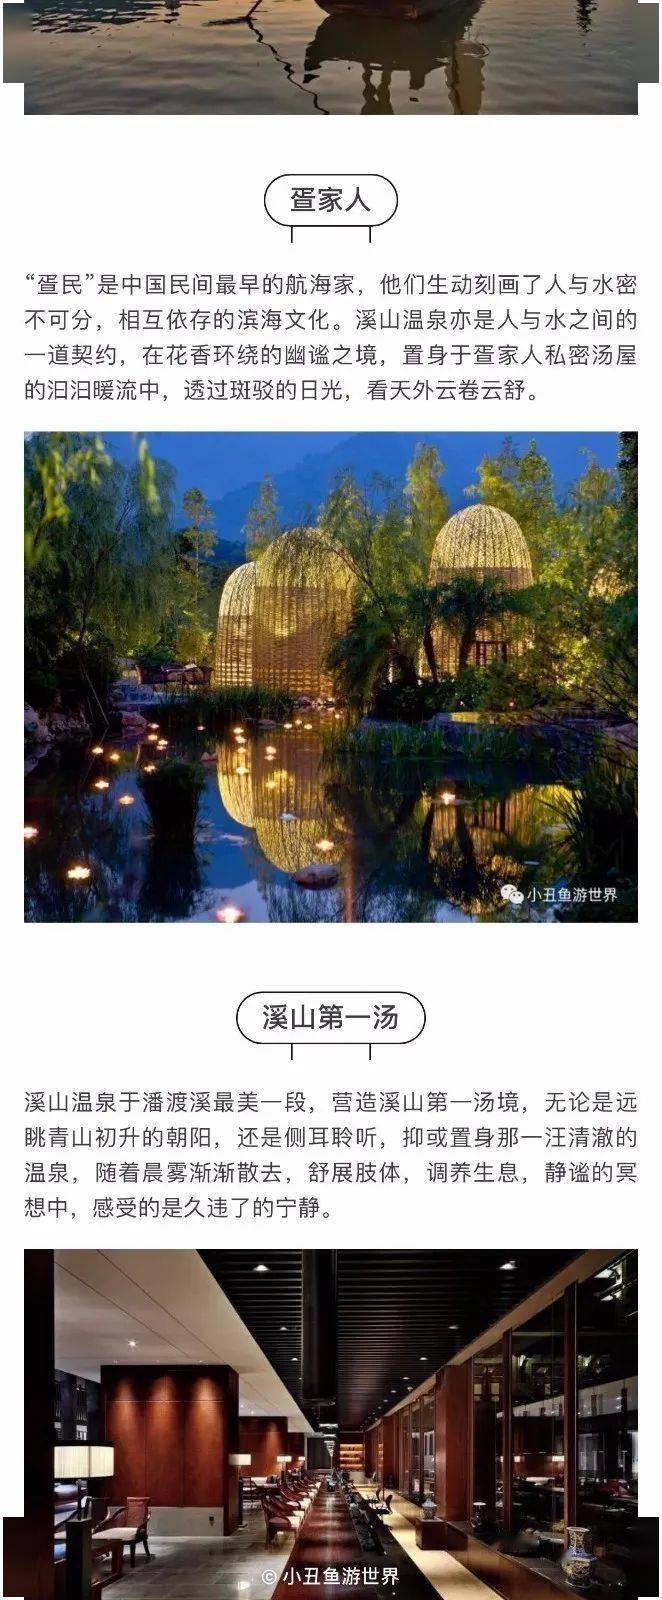 【双12特惠】溪山温泉一日|188元/人|福州唯一国家五星温泉,50 花漾